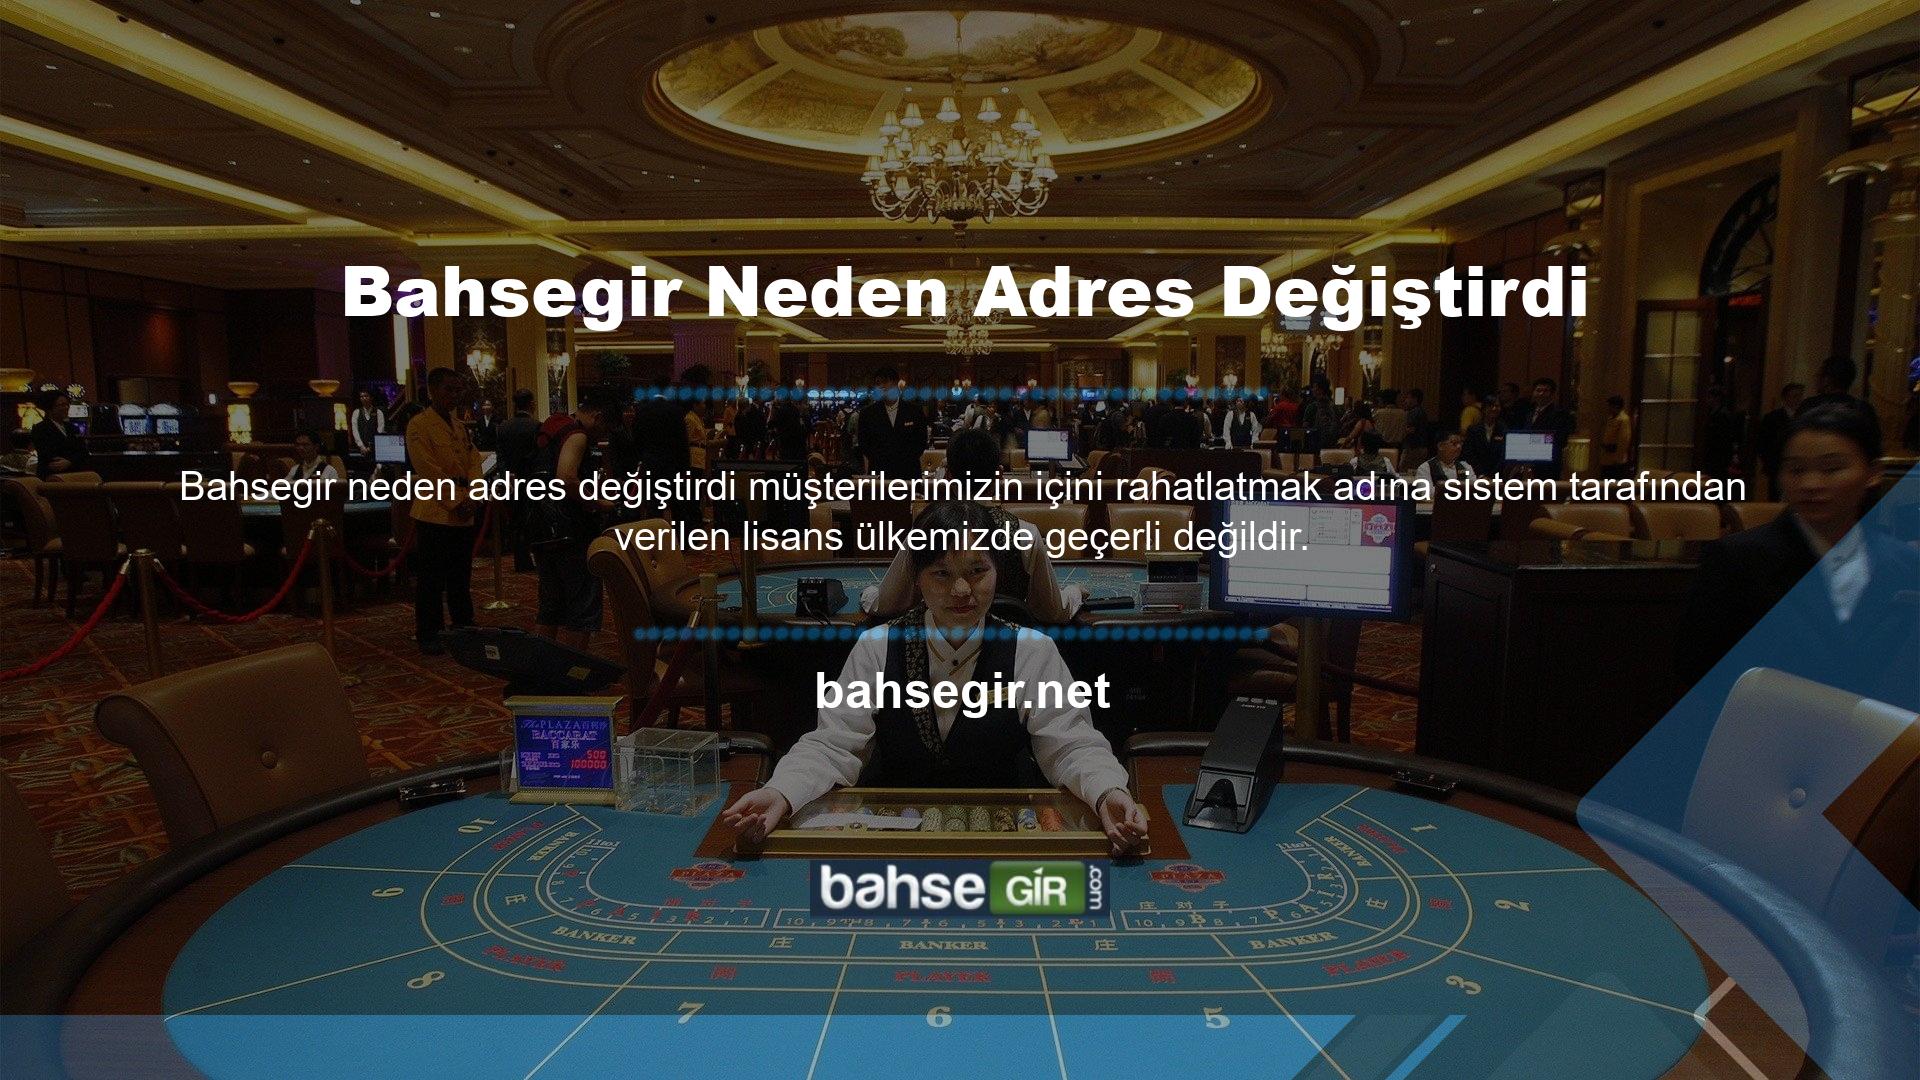 Söz konusu platformun aslında birden fazla lisansa sahip olması, hem casino sektörü hem de casino sektörü tarafından desteklenip kontrol edildiğini göstermektedir